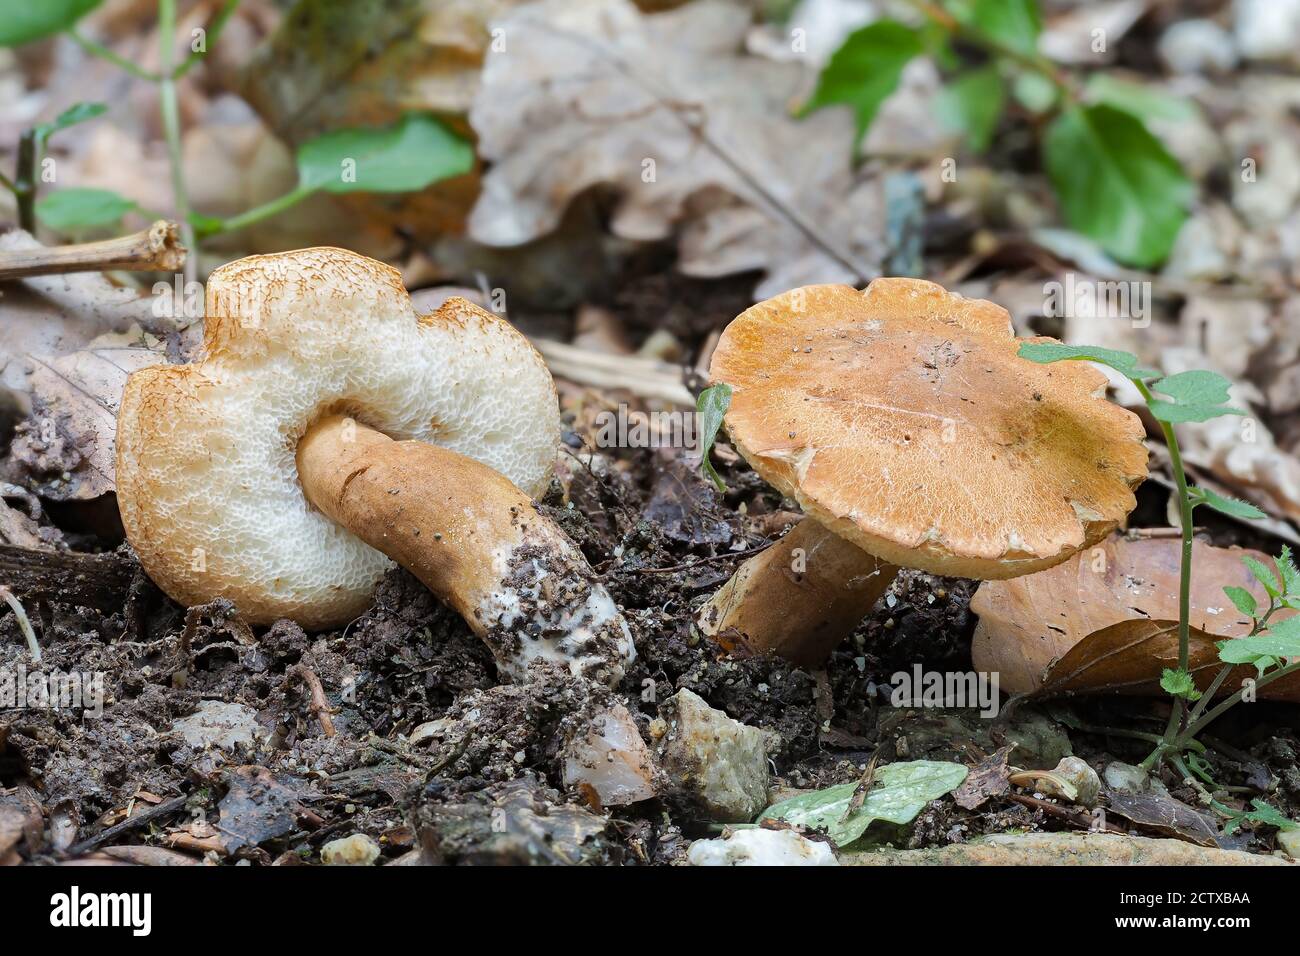 Le Bolete de Chestnut (Gyroporus castaneus) est une photo macro de champignons comestibles, empilés Banque D'Images